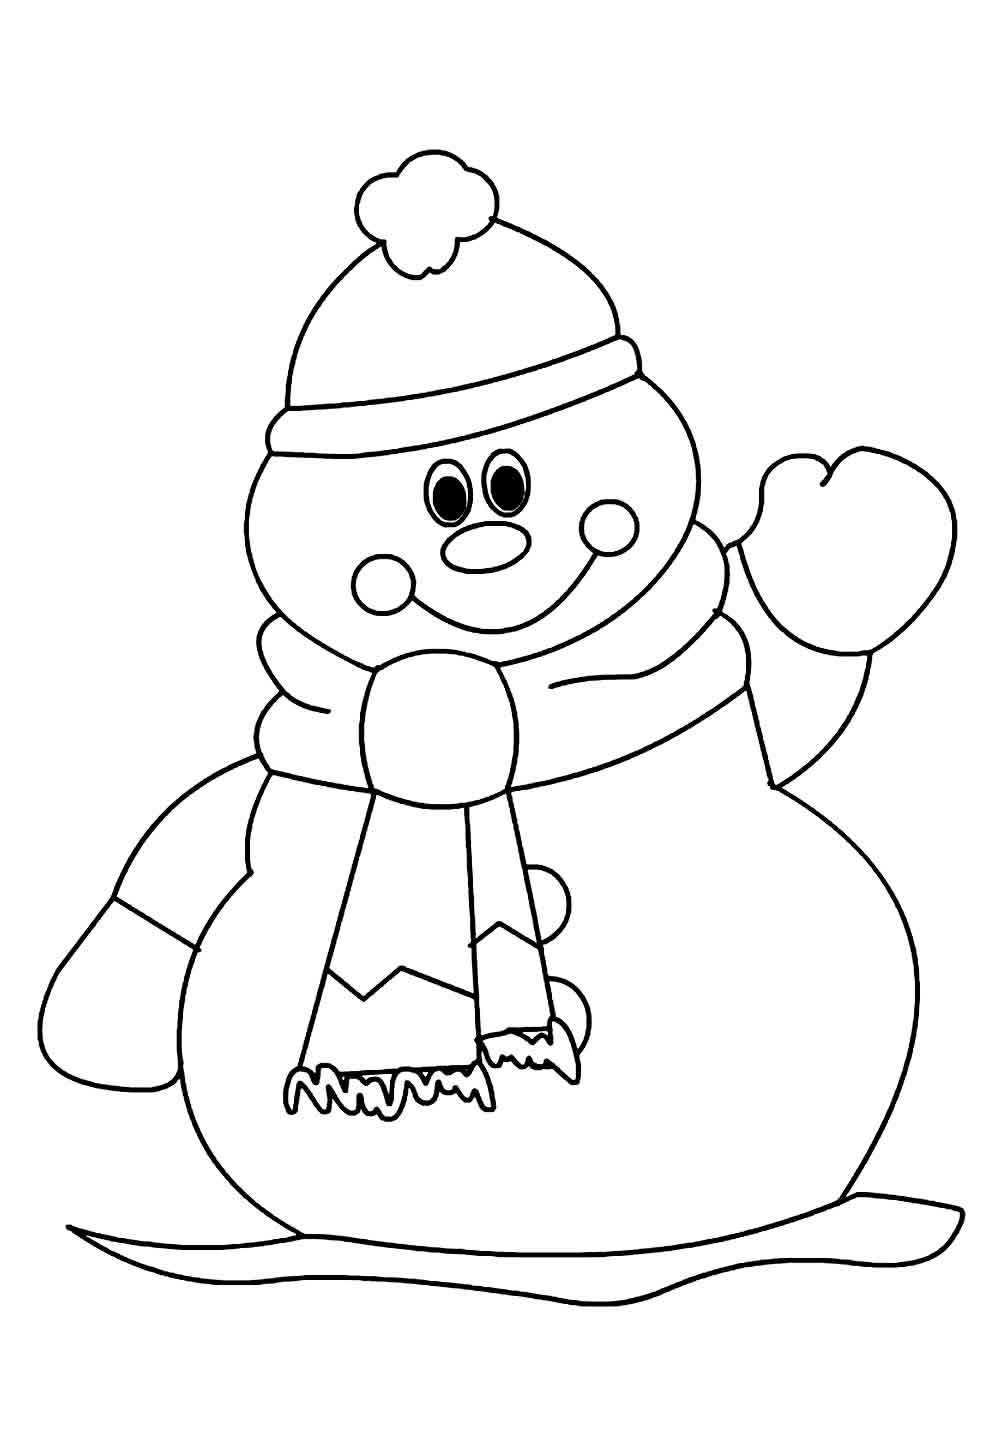 Desenho de Boneco de Neve